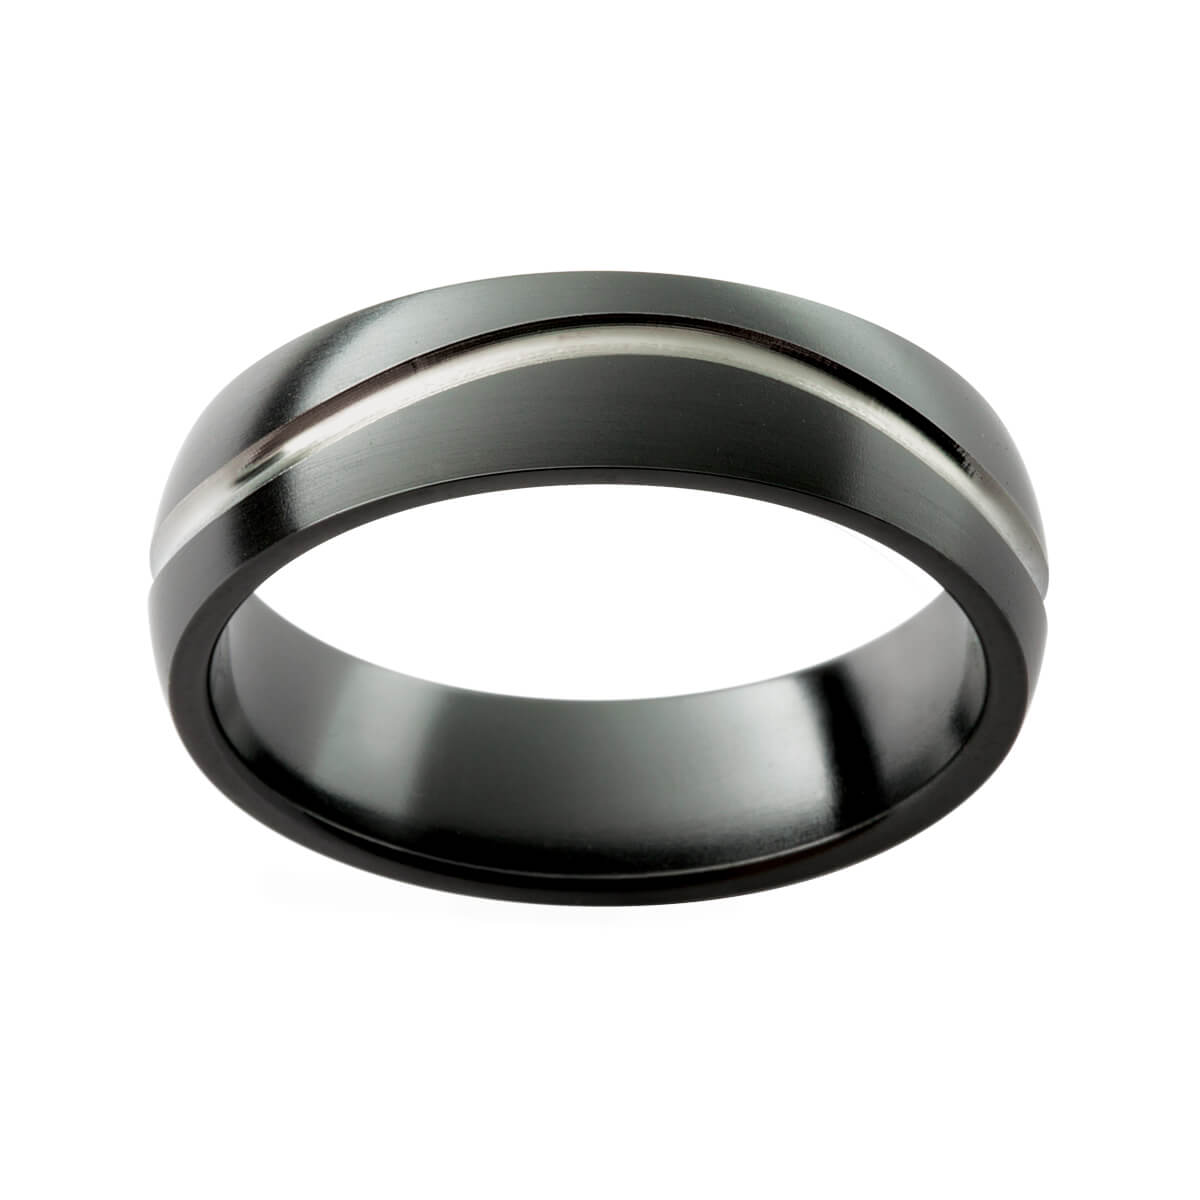 Black Zirconium Ring Wedding Ring Mens Wedding Band Size L 1/2 - Etsy